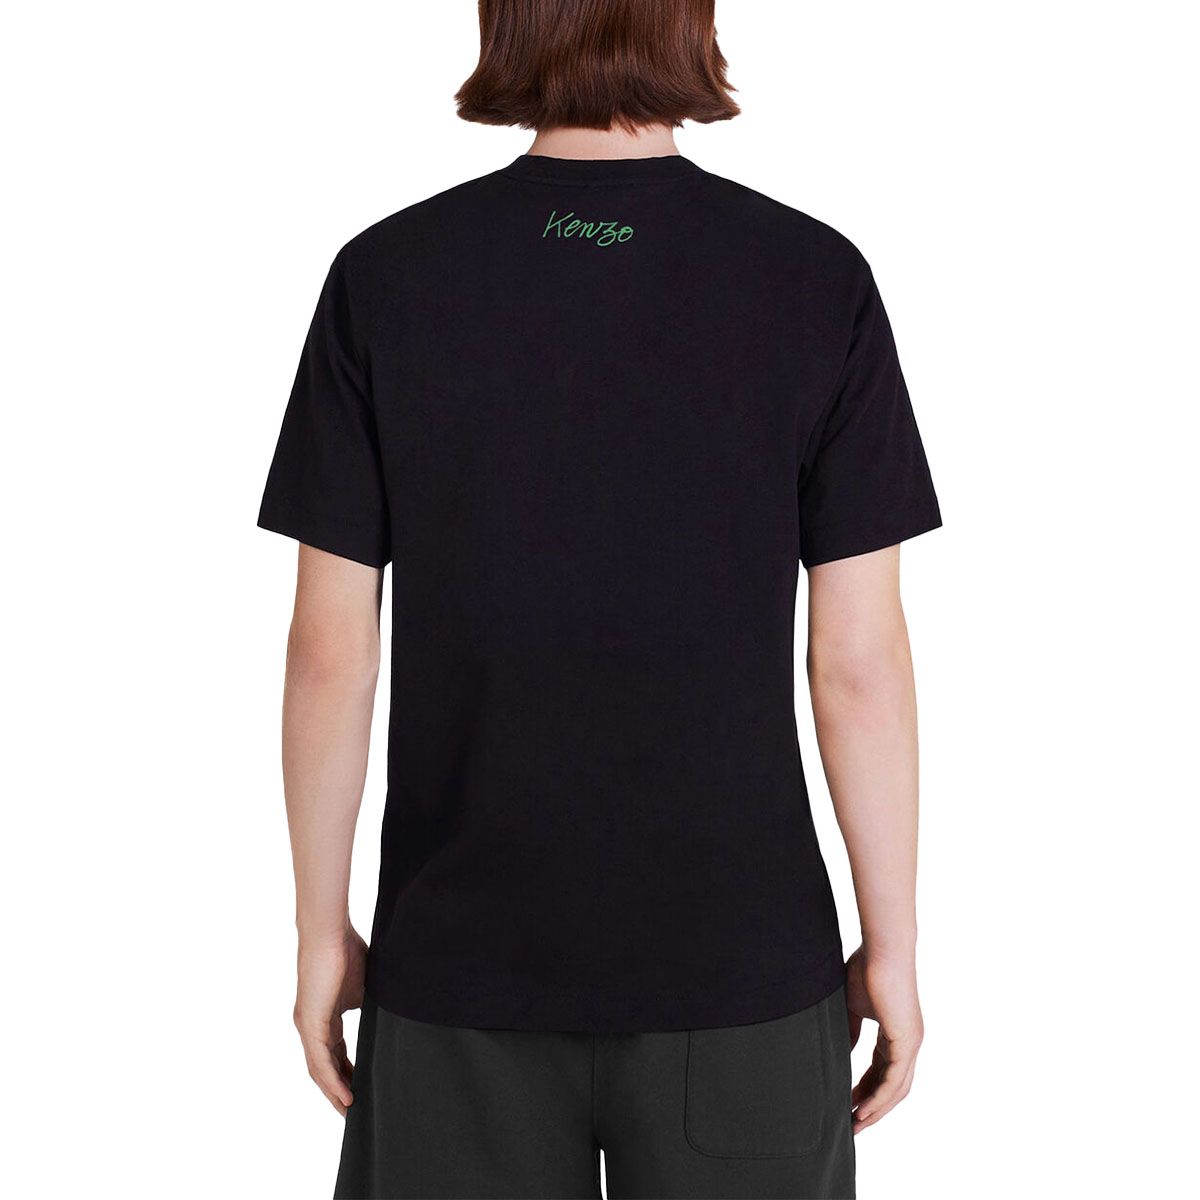 'Poppy' Black T-Shirt